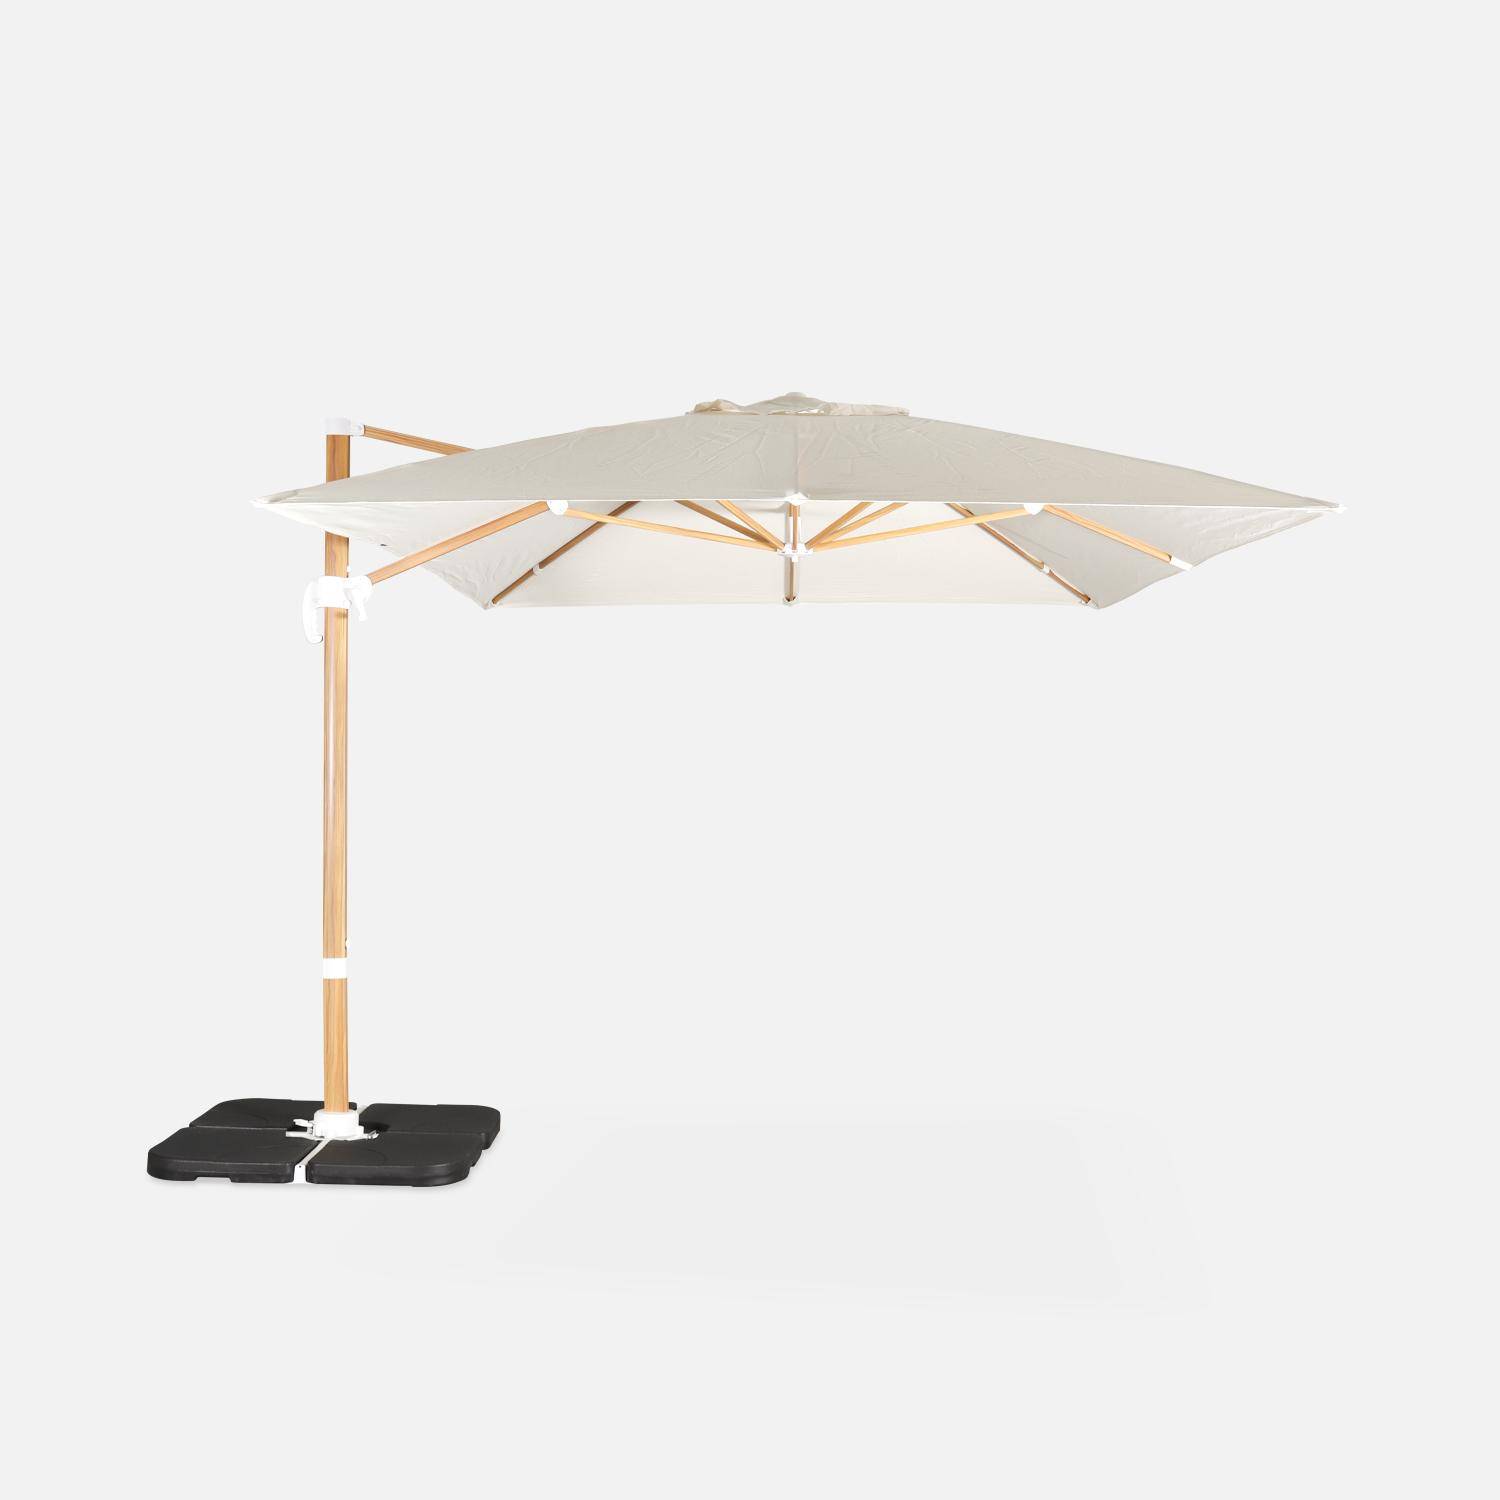 Rechthoekige ecru parasol 3x4m, paal met houteffect, verzwaarde tegels 50x50cm Photo4